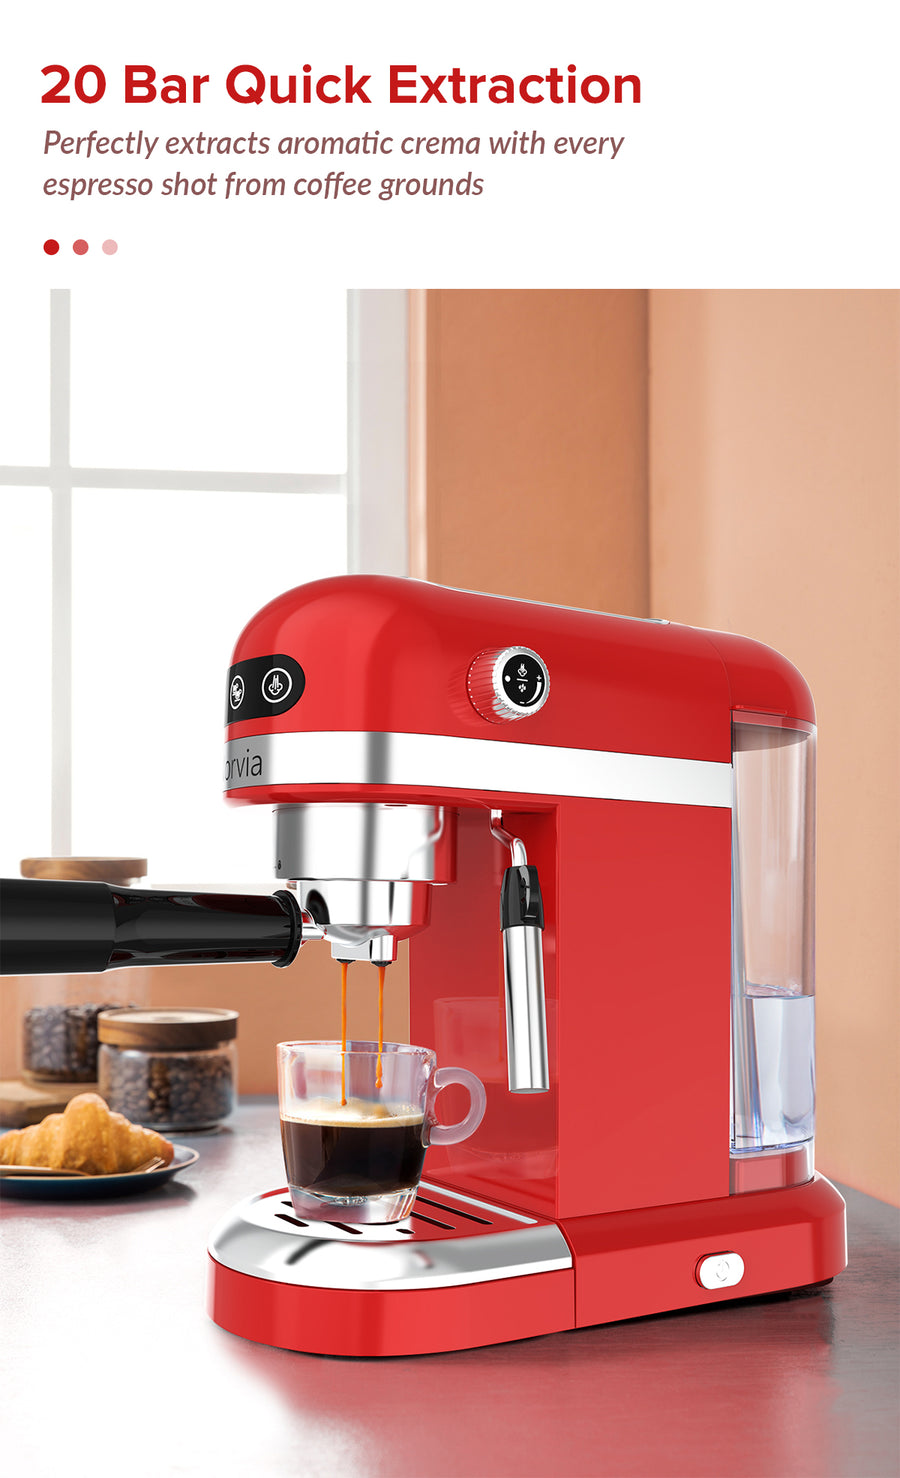 Airbot Espresso Coffee Machine CM8000